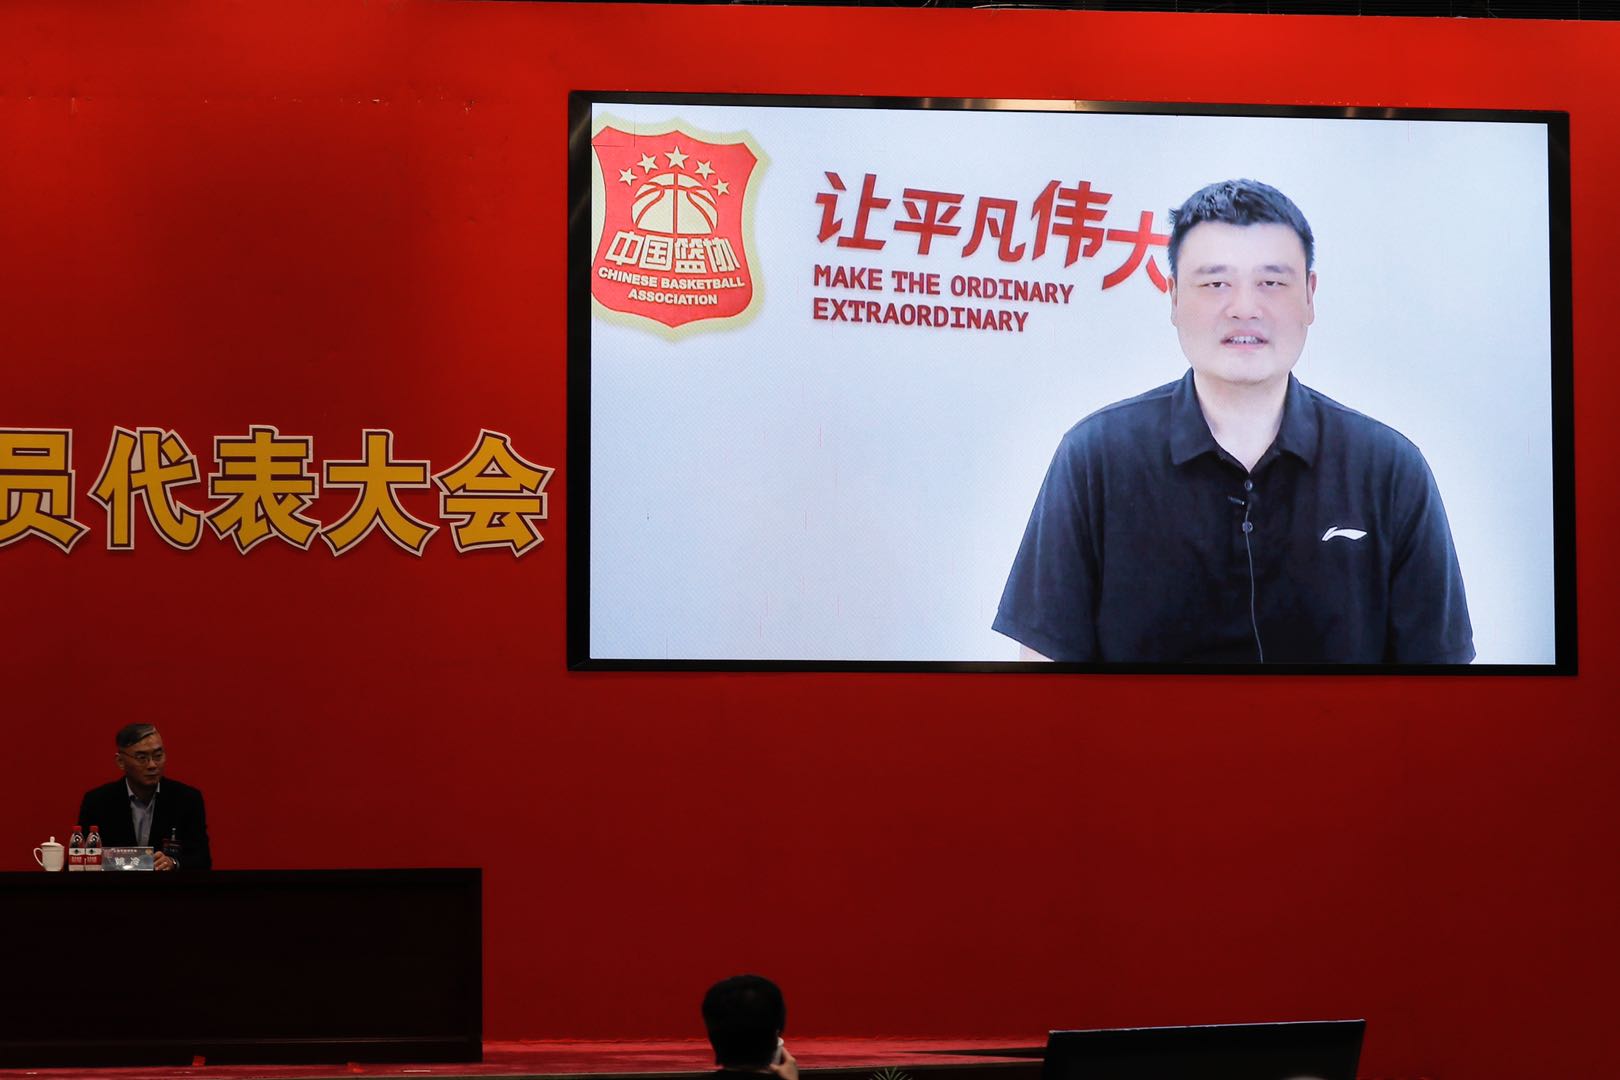 中国篮球协会主席姚明通过视频向大会的胜利召开表示祝贺.jpg